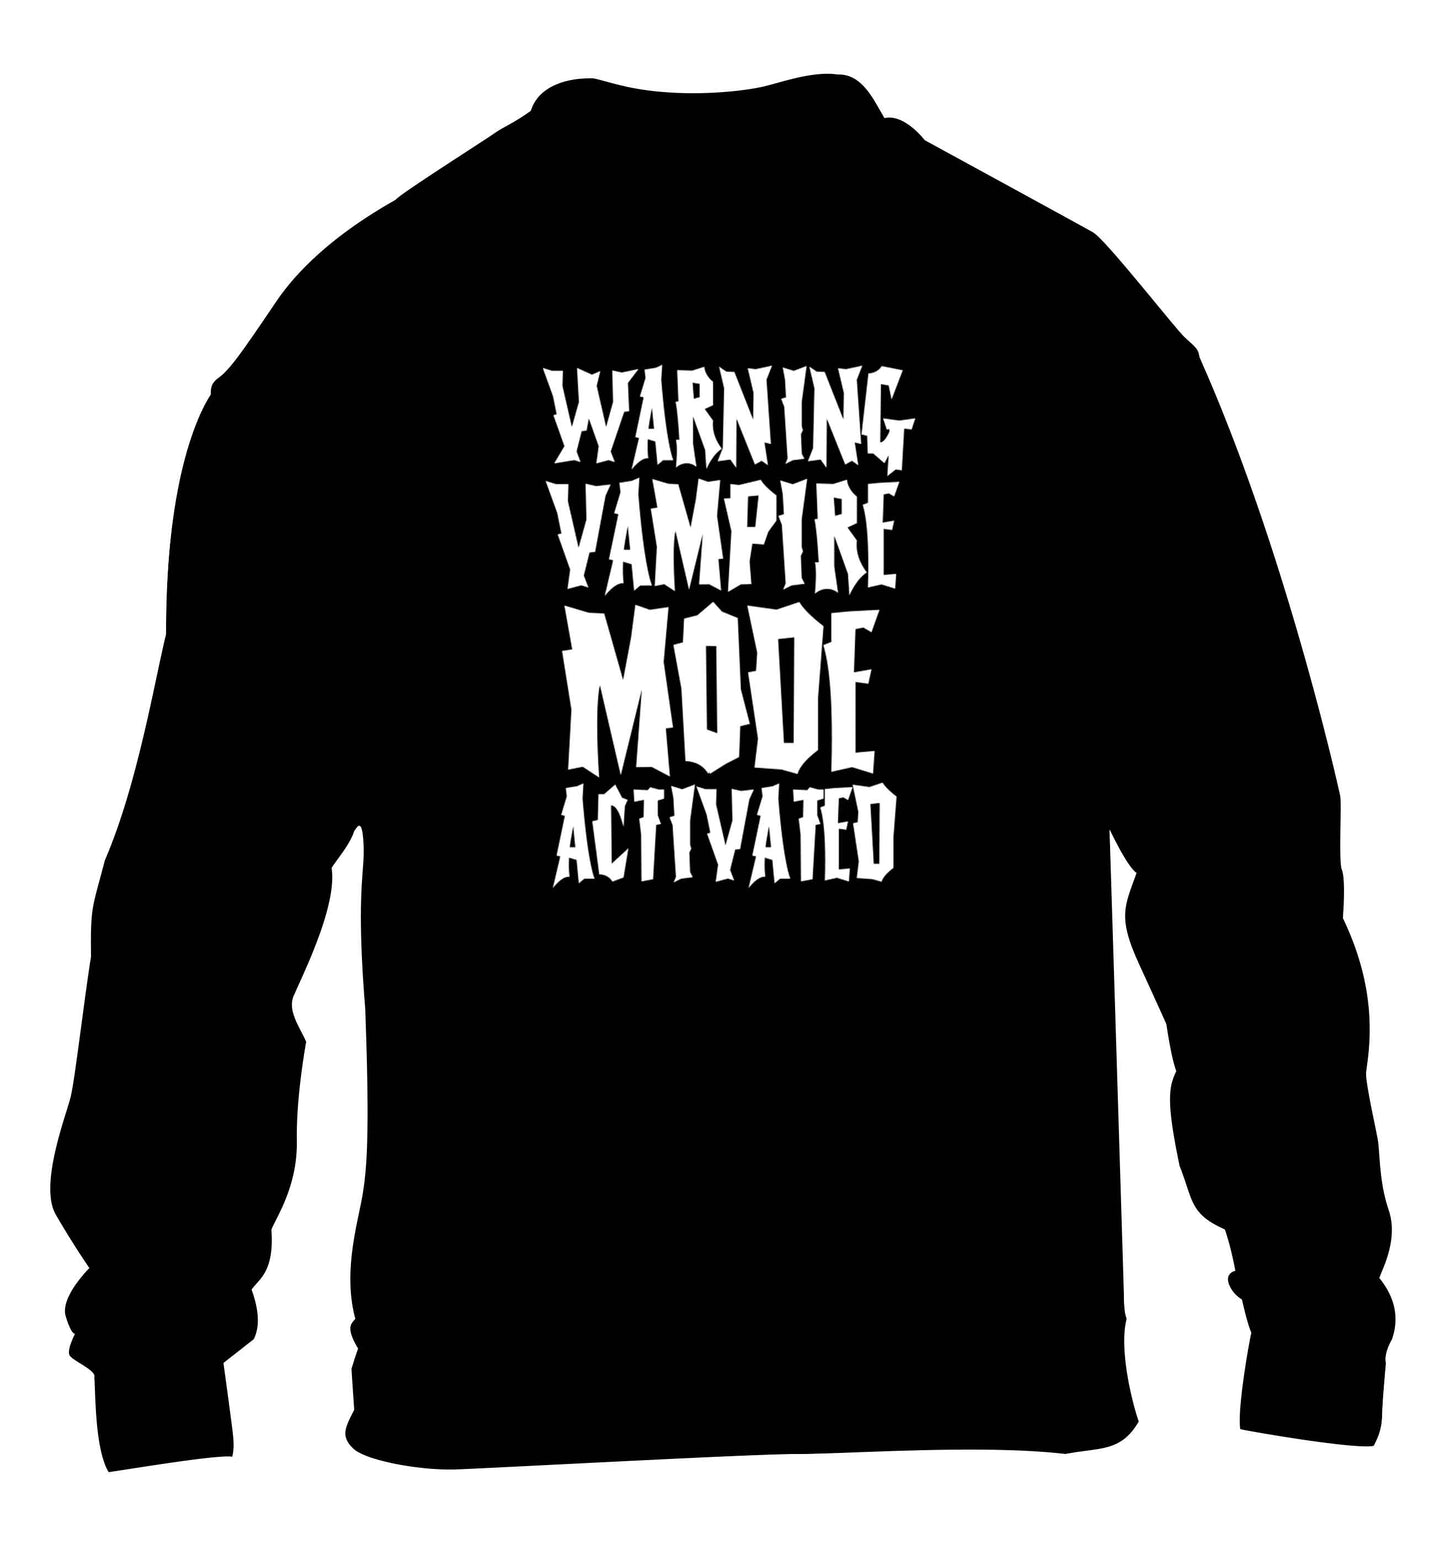 Warning vampire mode activated children's black sweater 12-13 Years